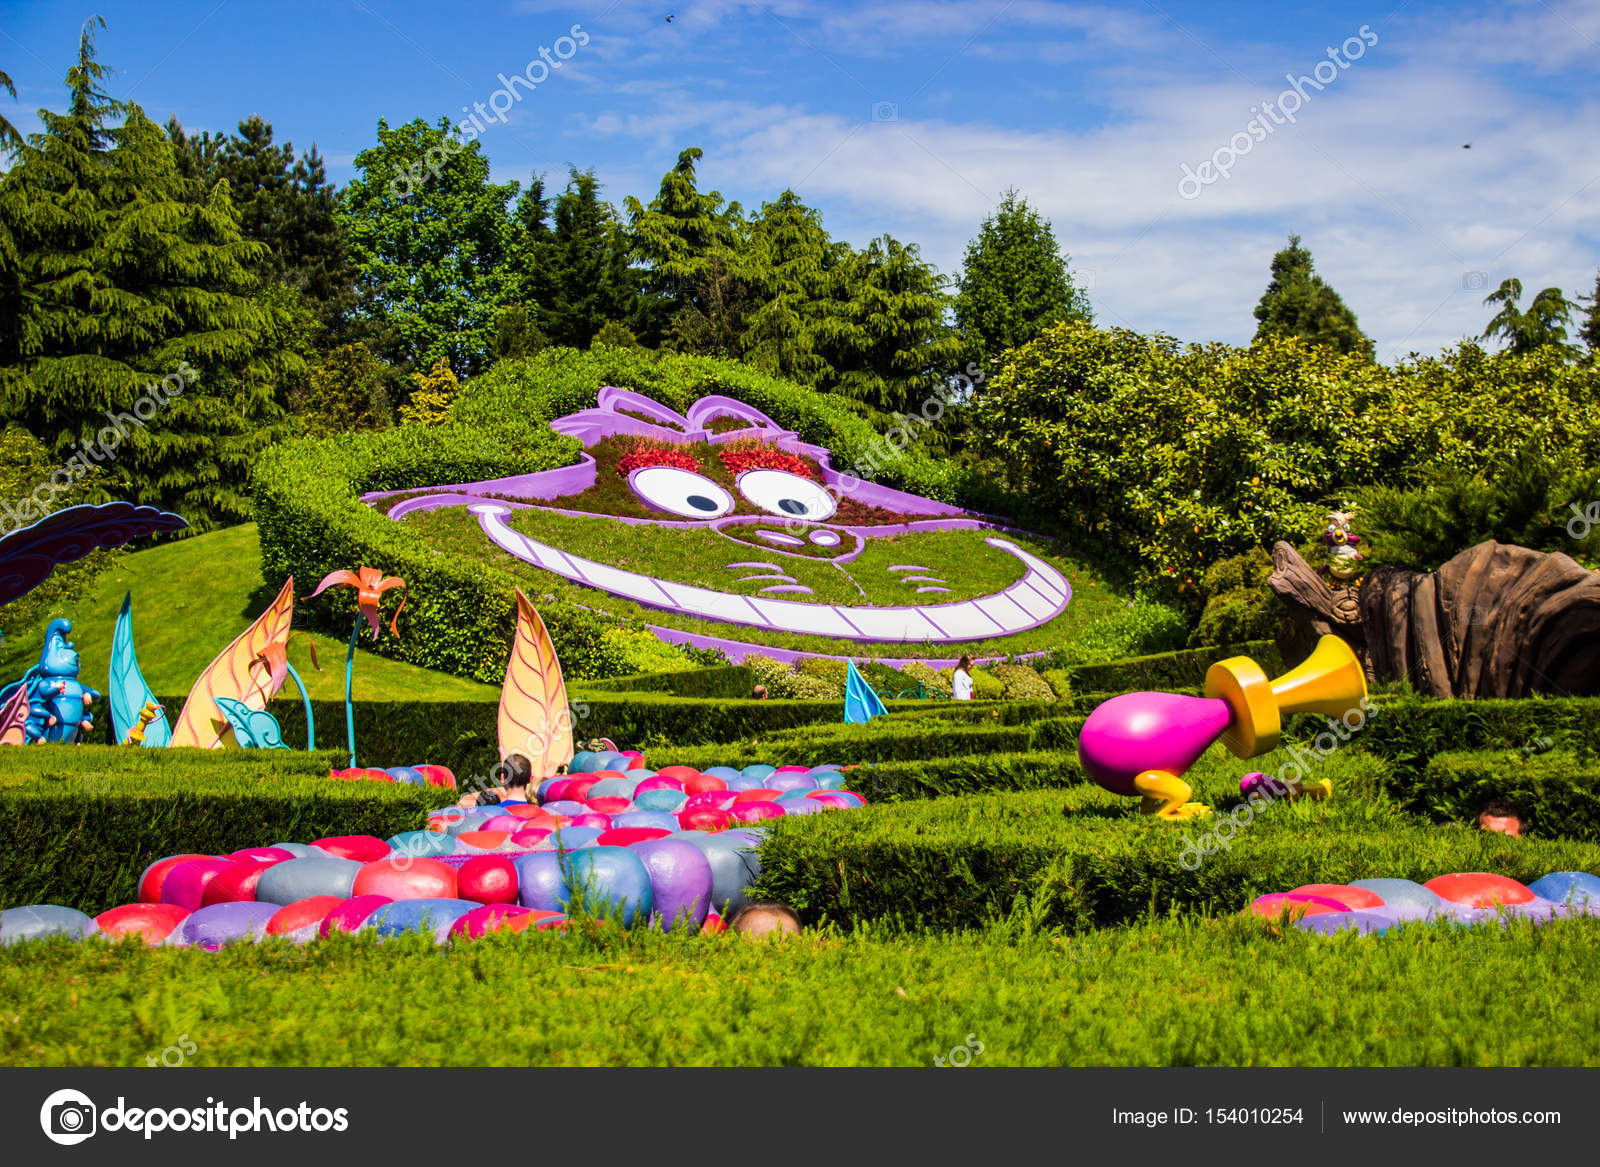 Cheshire Cat Disneyland Paris - HD Wallpaper 